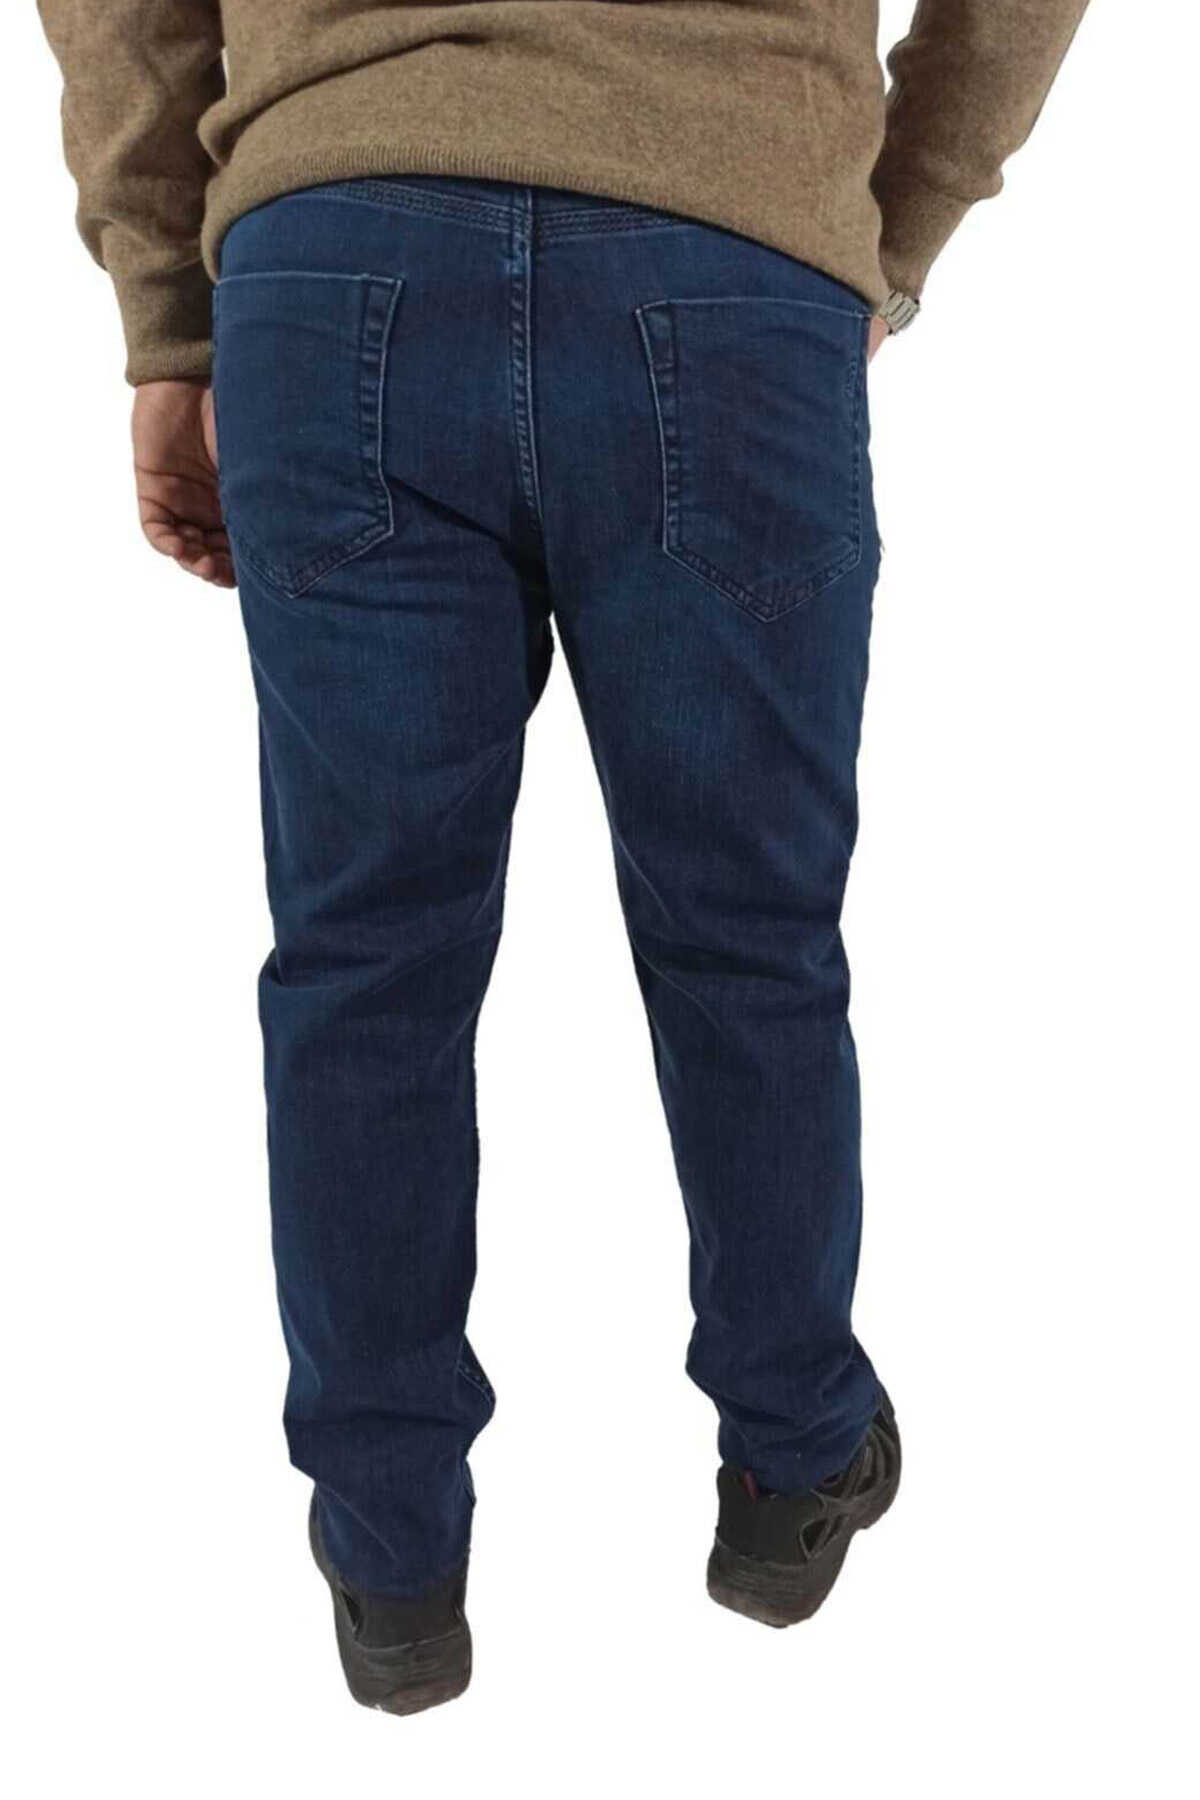 شلوار جین مردانه سایز بزرگ آبی تیره 